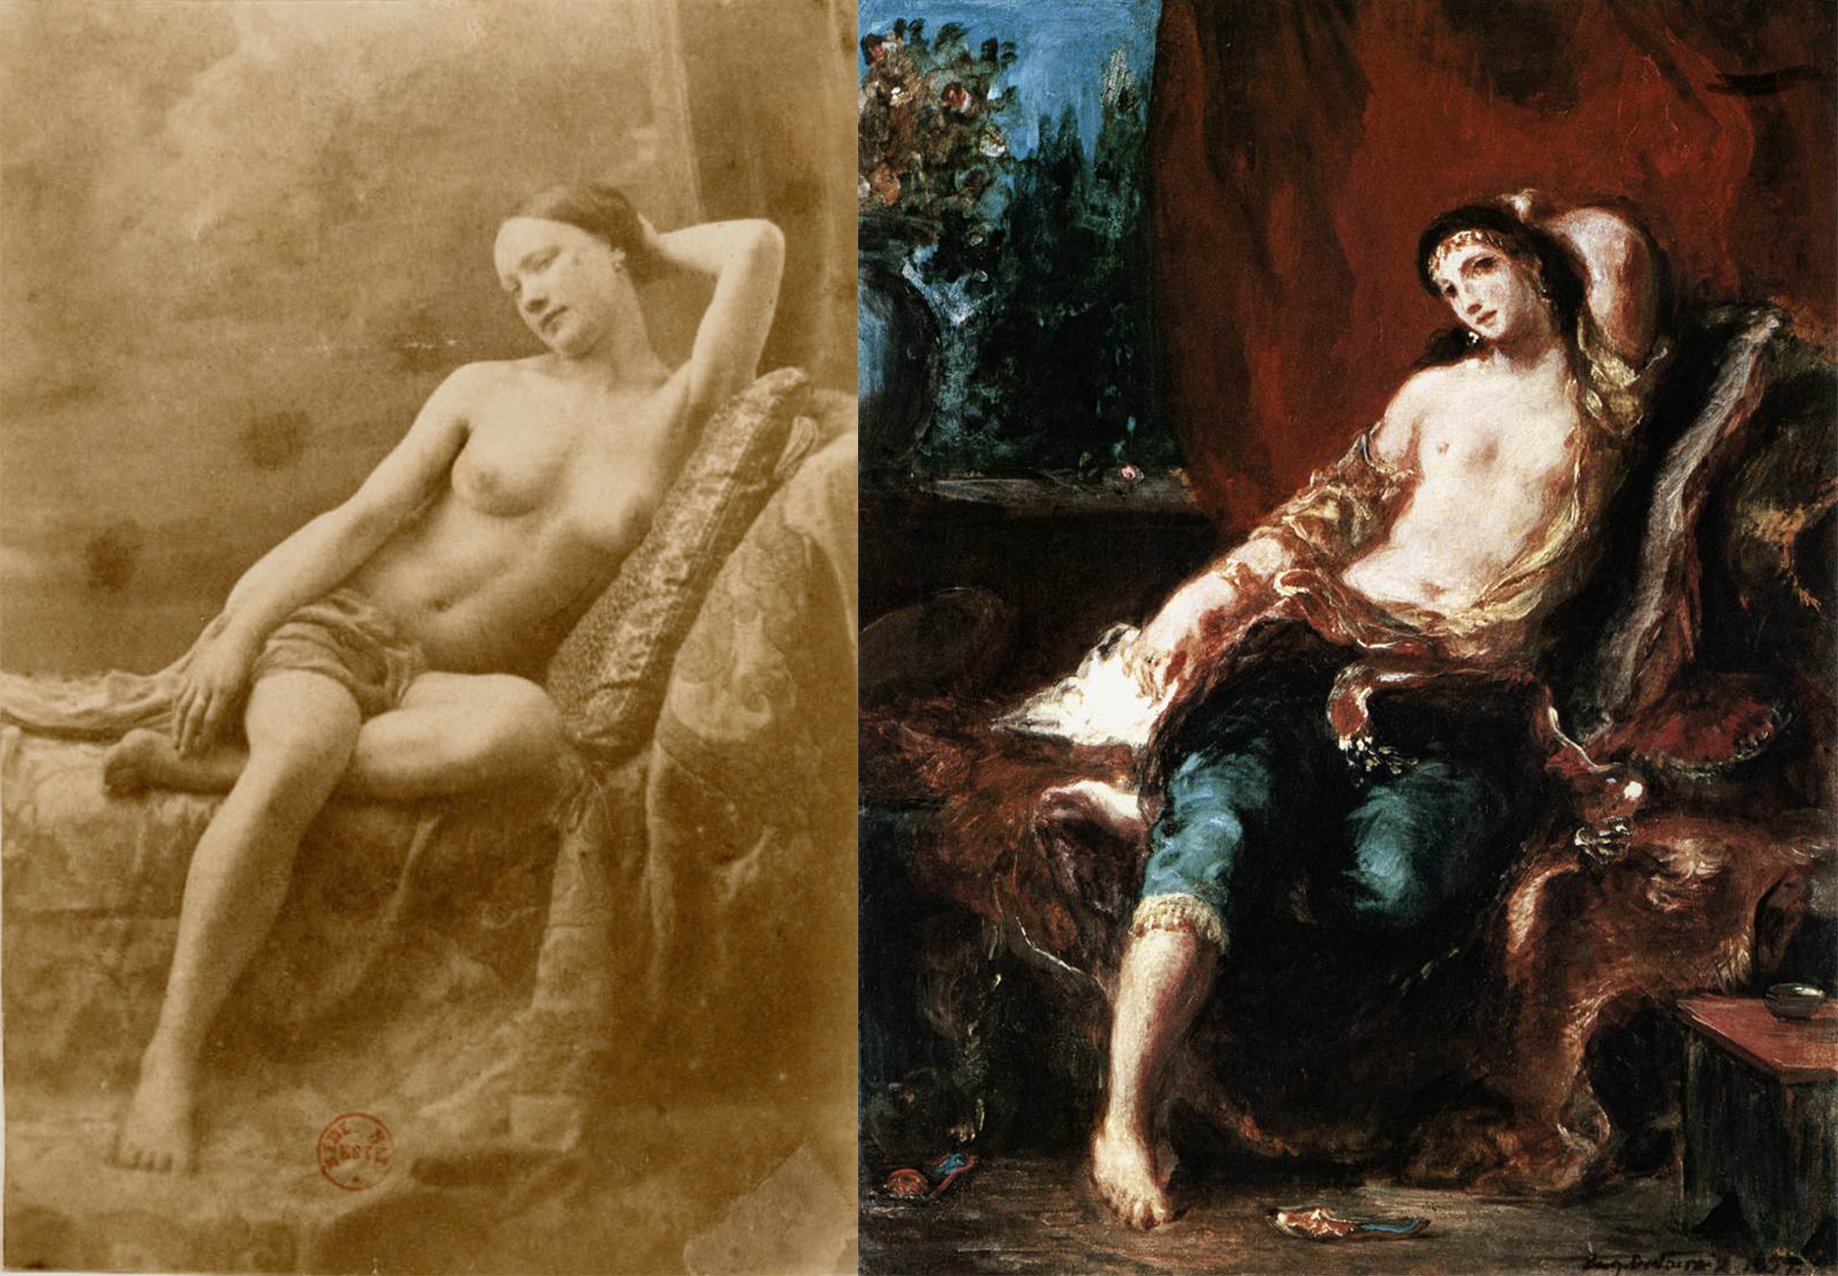 Odalisca / Odalisca by Eugène Durieu / Eugène Delacroix - 1833/1857 coleção privada